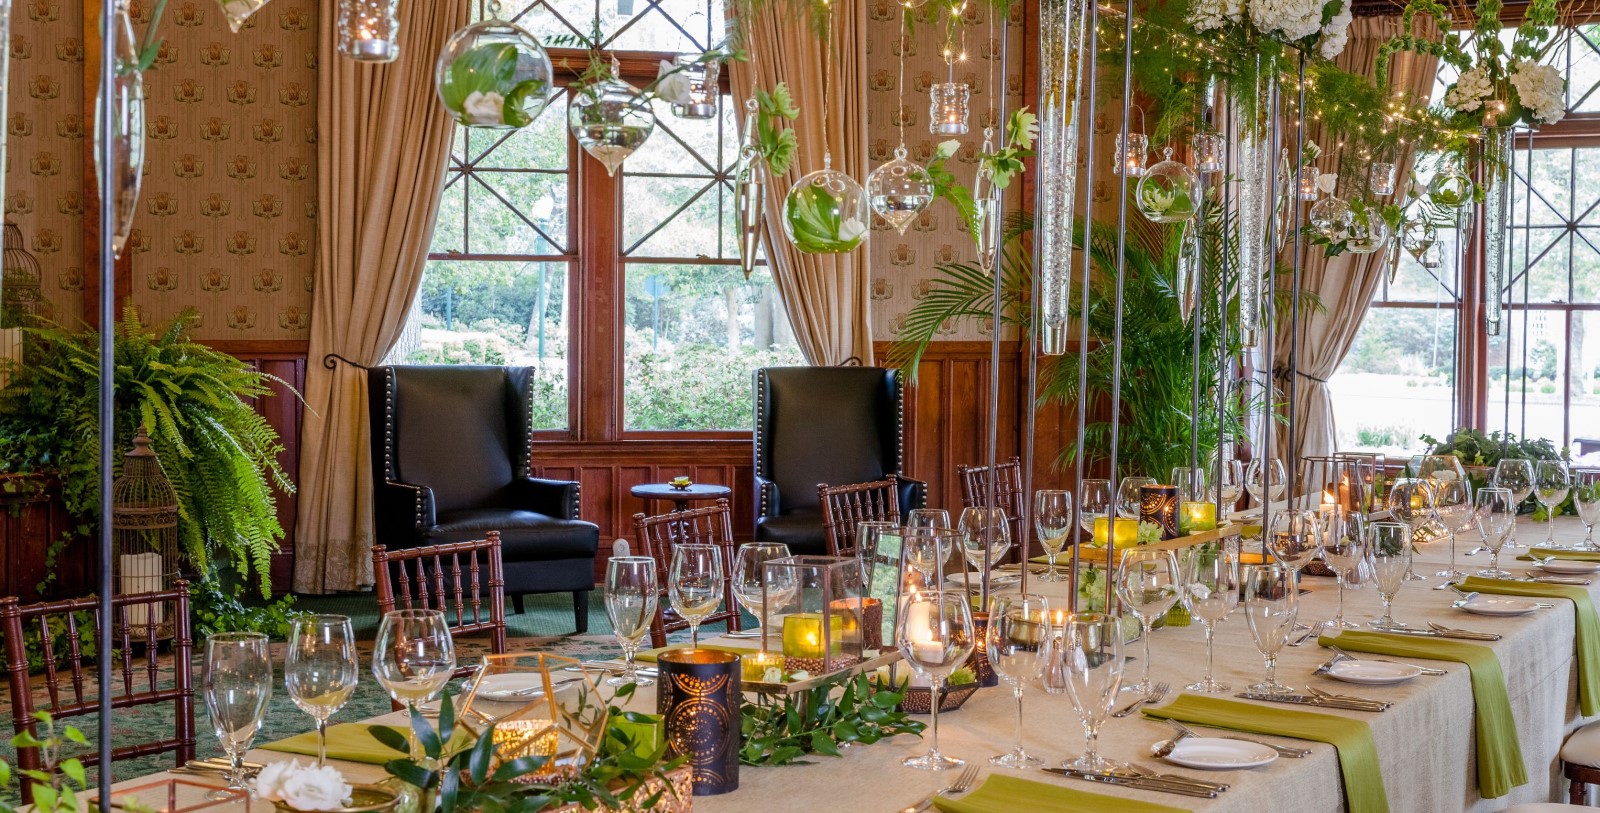 Image of Evergreen Banquet at Pinehurst Resort, 1895, Member of Historic Hotels of America, in Village of Pinehurst, North Carolina, Weddings